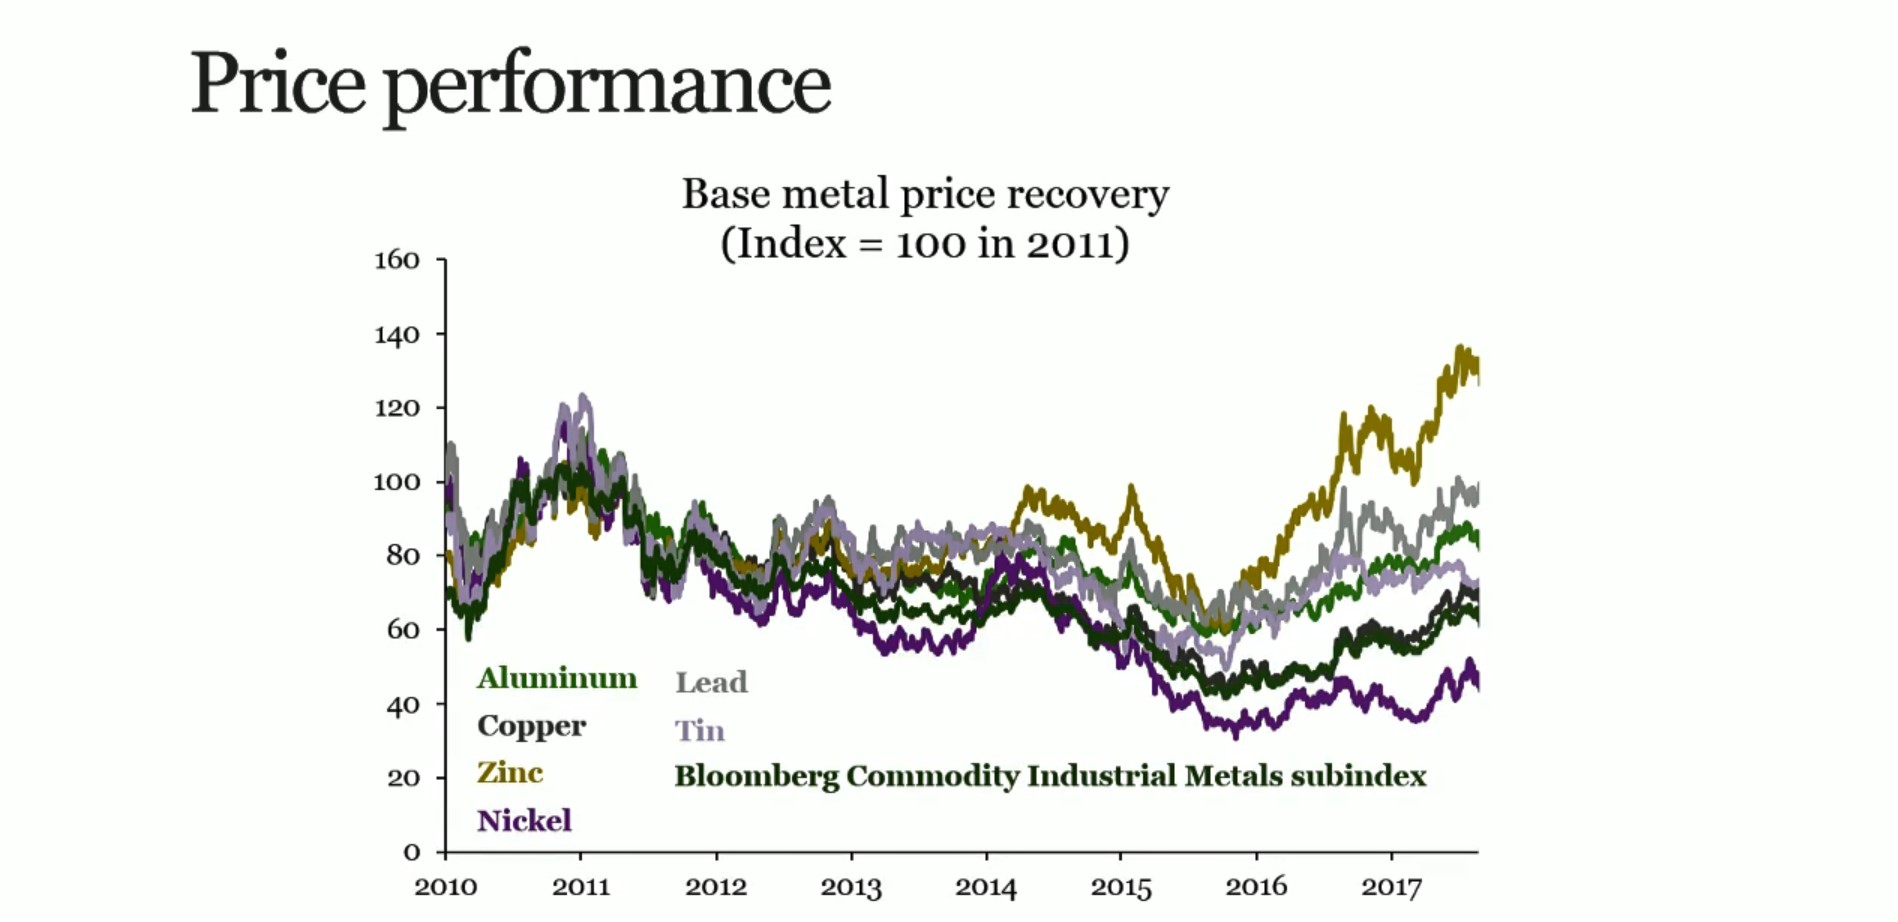 Base metal price performance